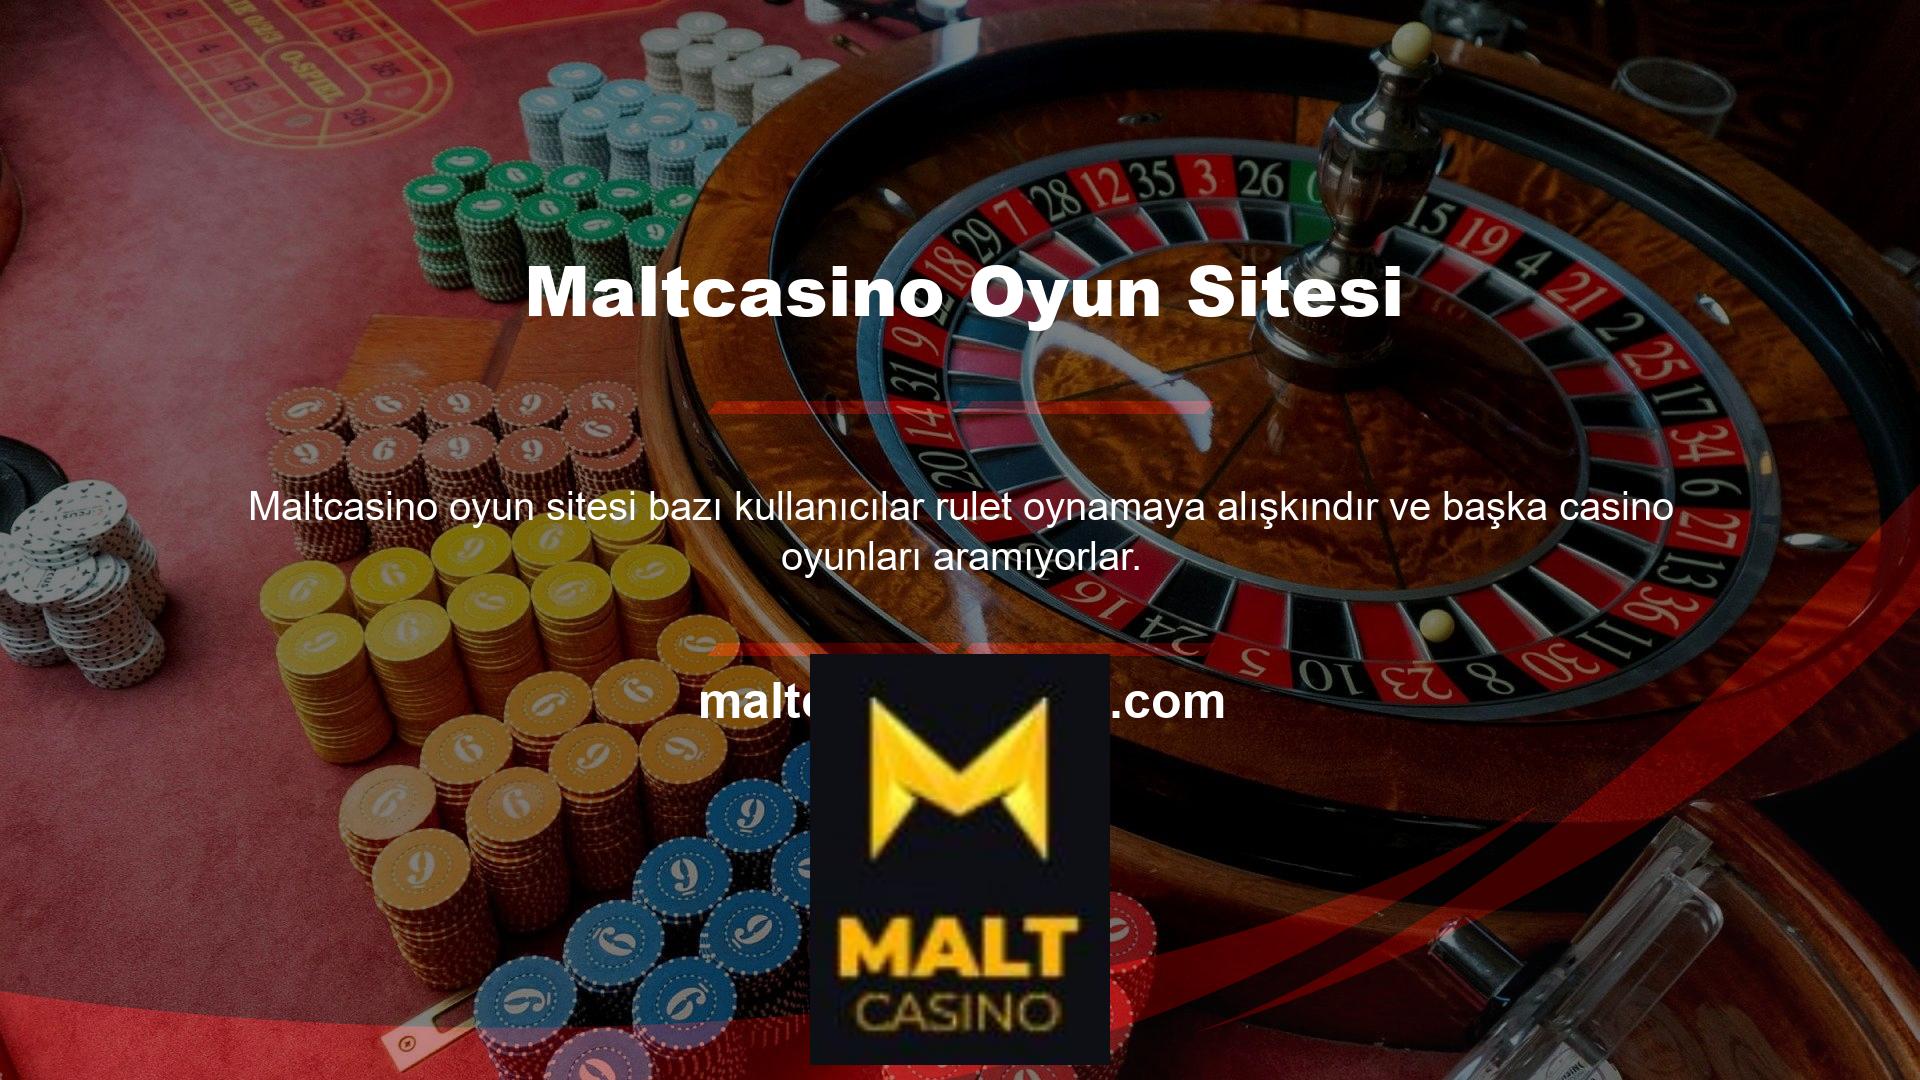 Siz değerli kullanıcımız Maltcasino Casino Games